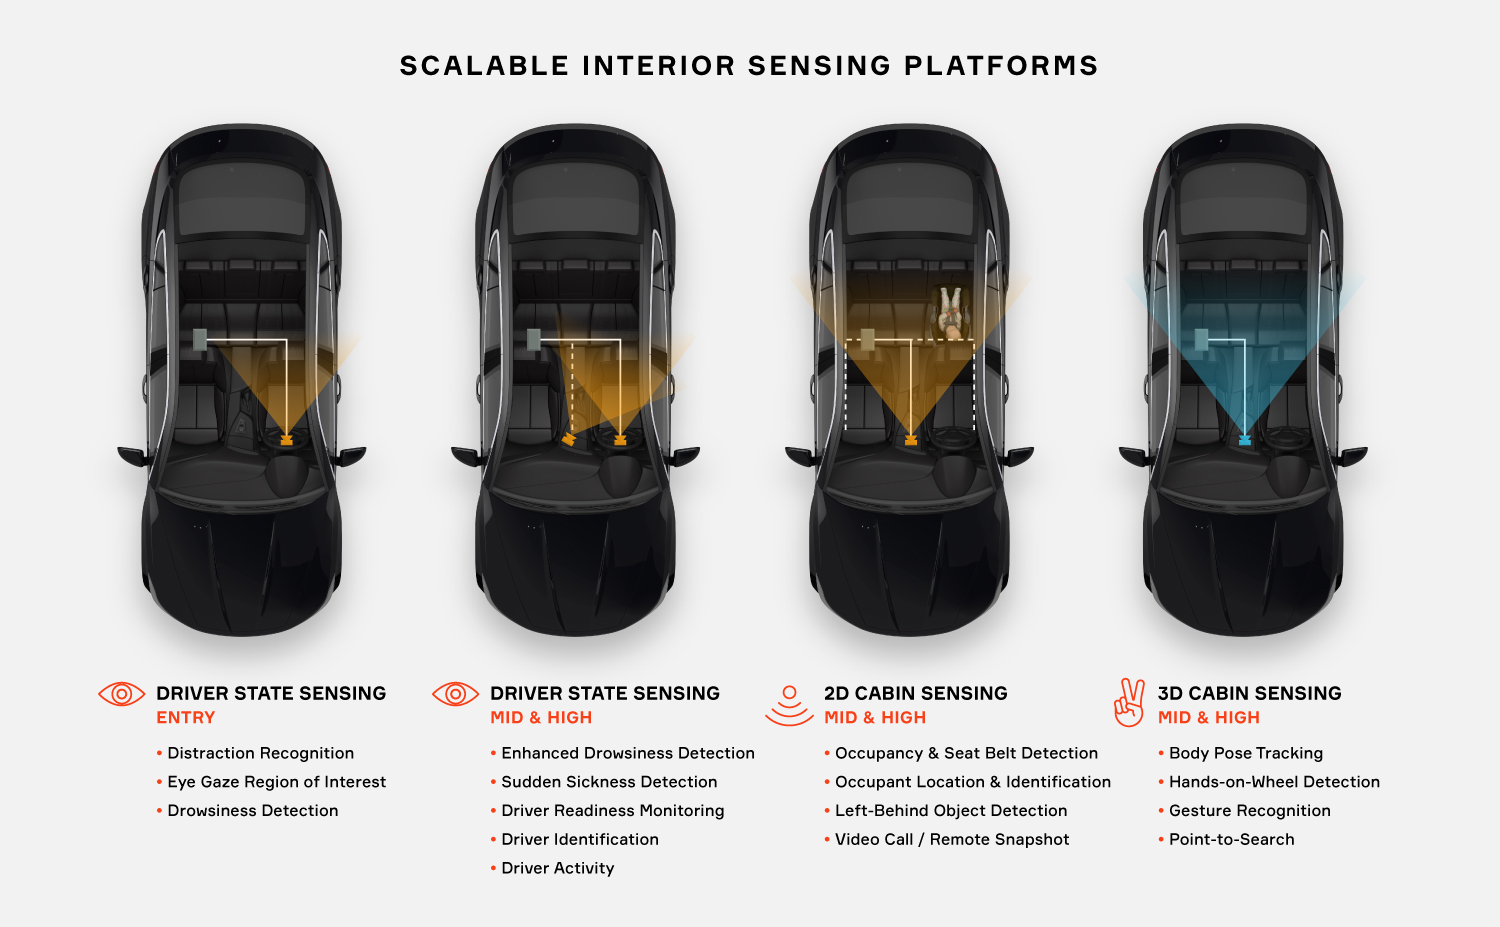 Scalable Interior Sensing Platforms